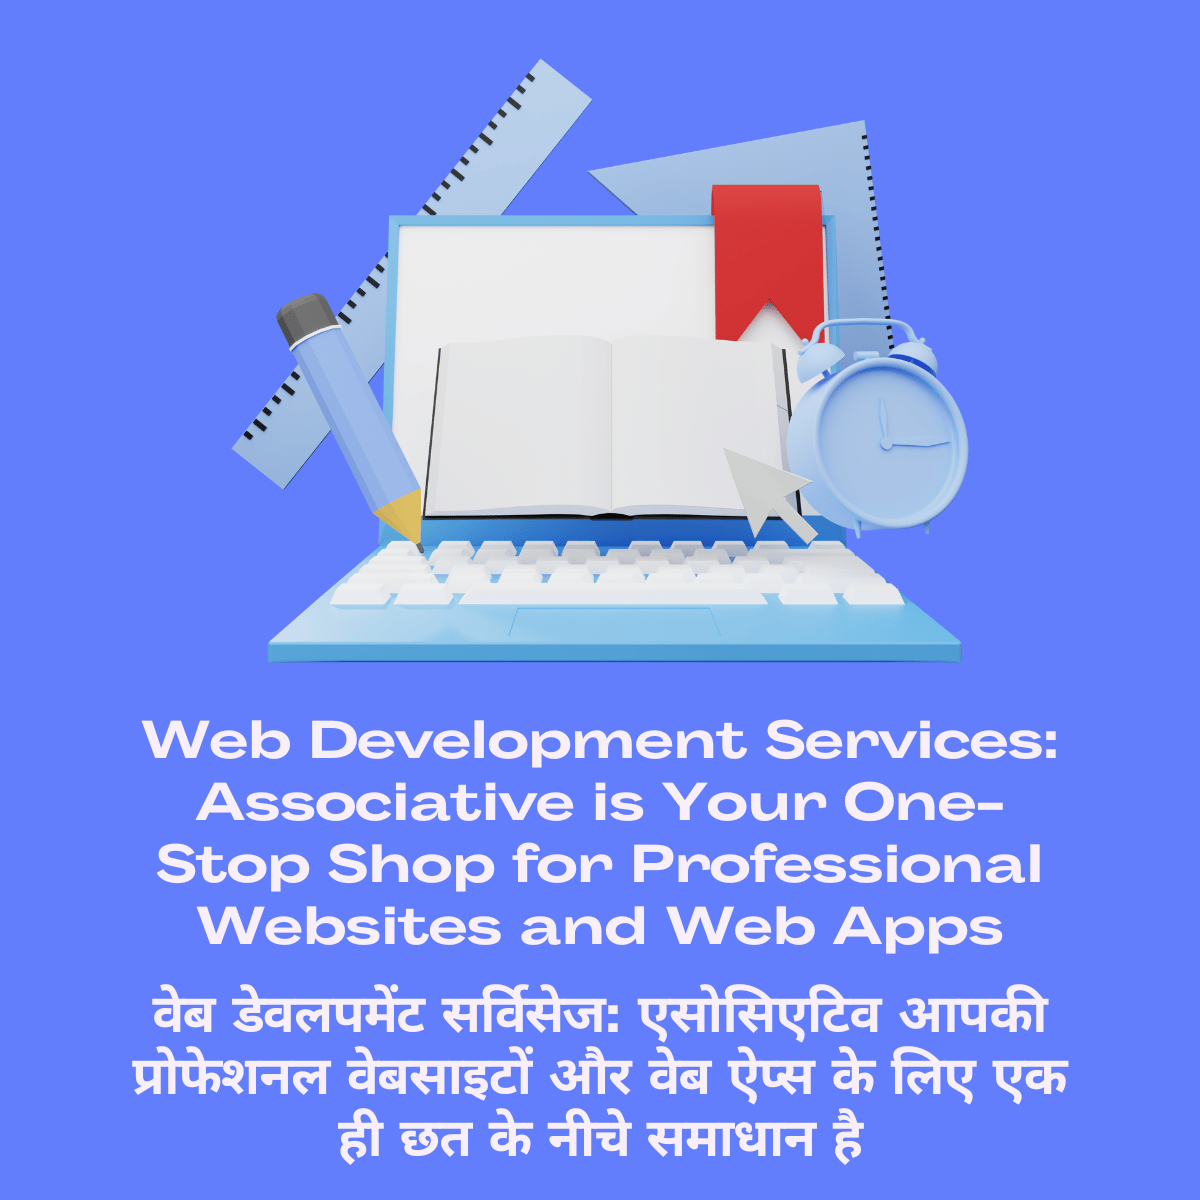 Web Development Services: Associative is Your One-Stop Shop for Professional Websites and Web Apps वेब डेवलपमेंट सर्विसेज: एसोसिएटिव आपकी प्रोफेशनल वेबसाइटों और वेब ऐप्स के लिए एक ही छत के नीचे समाधान है